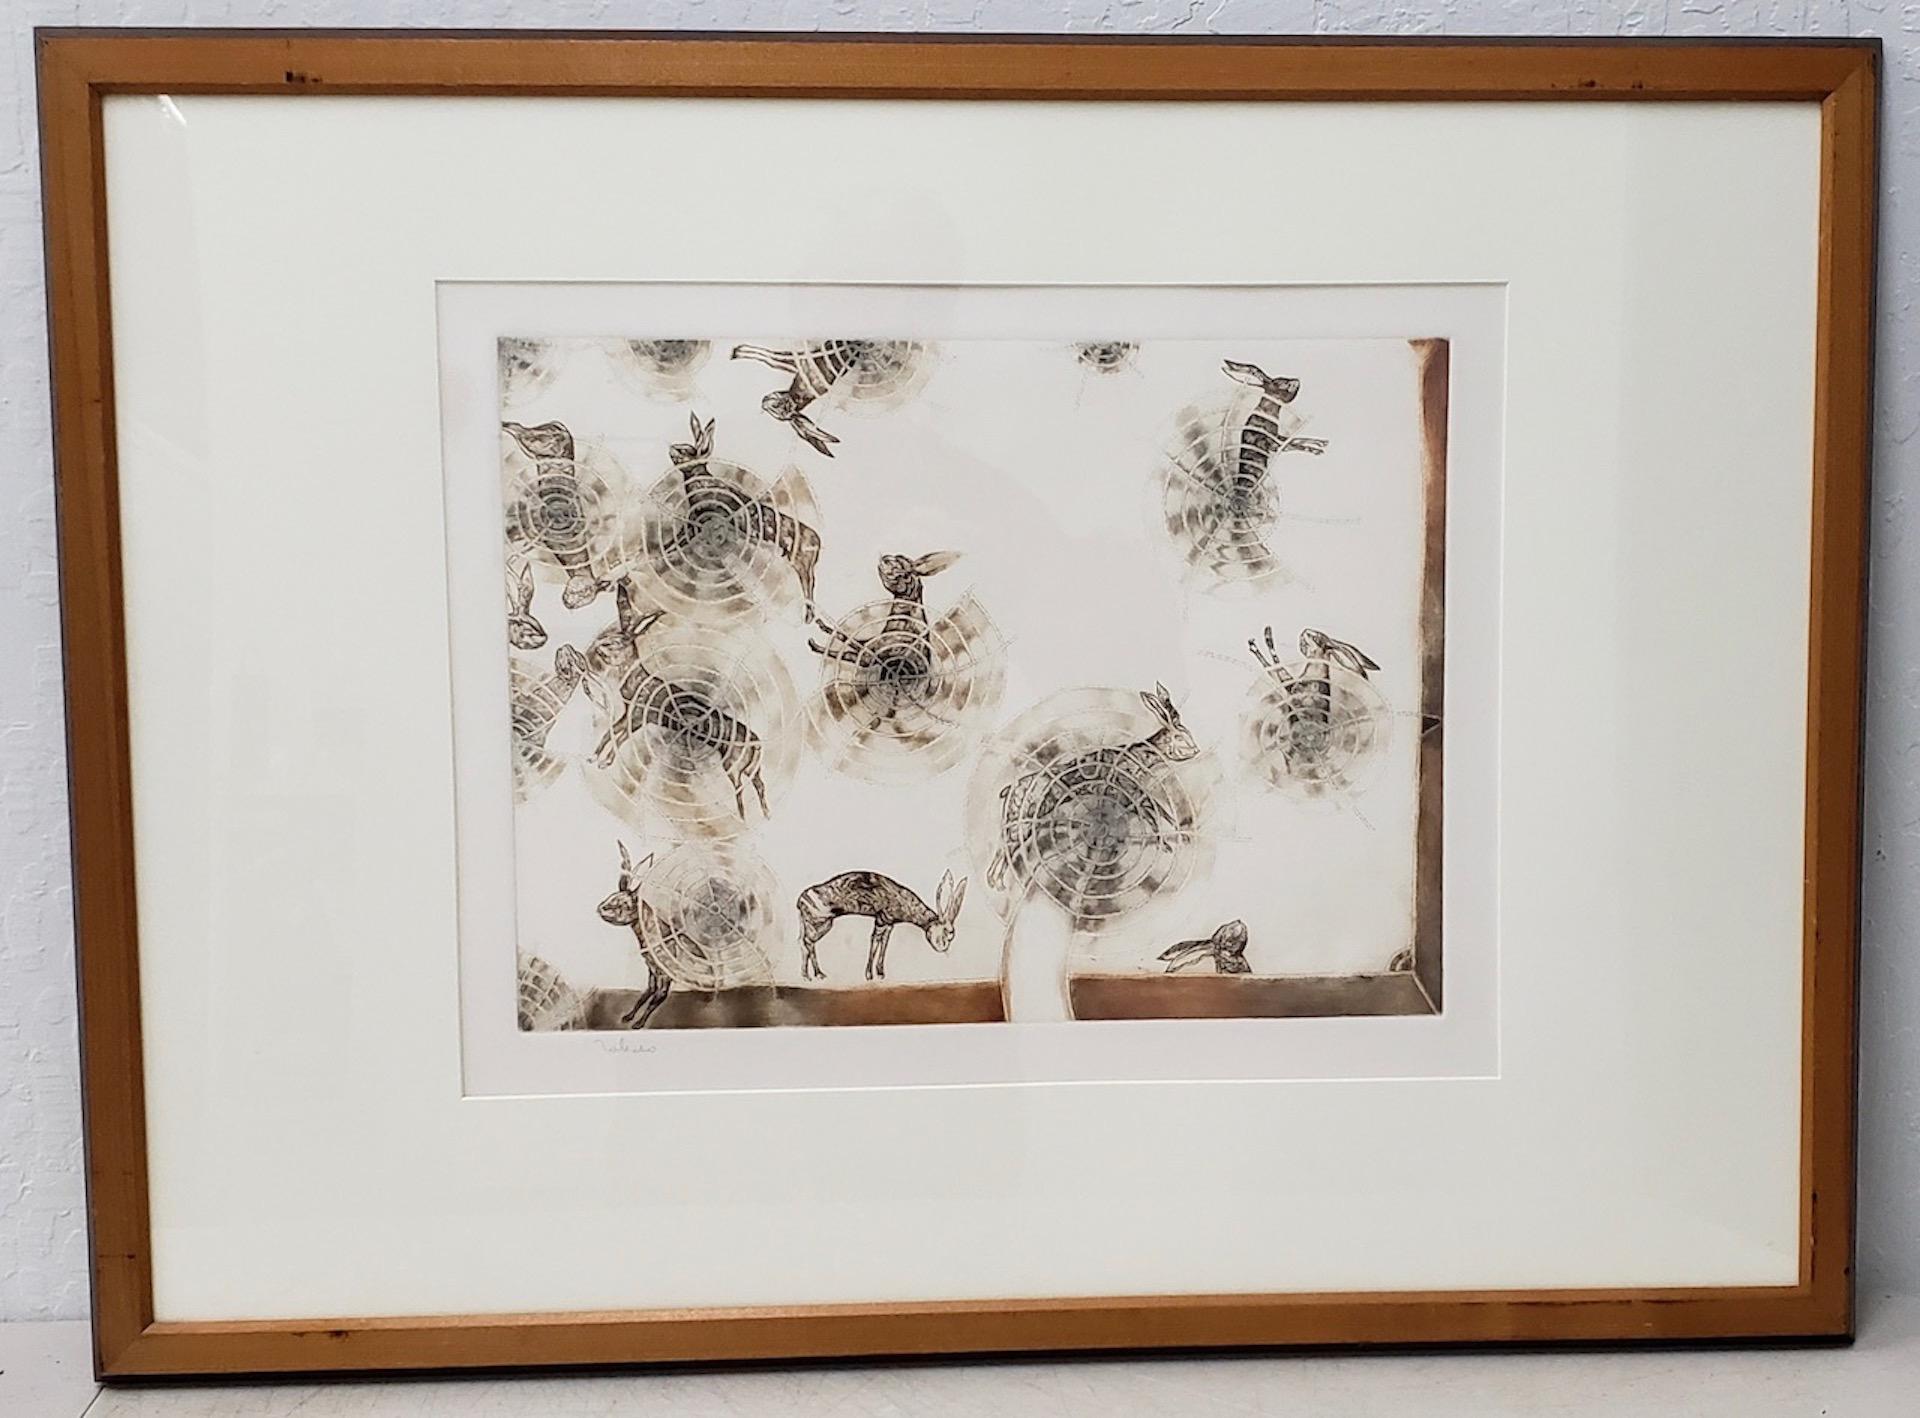 Francisco Toledo Abstract Print - Rabbits and Pinwheels